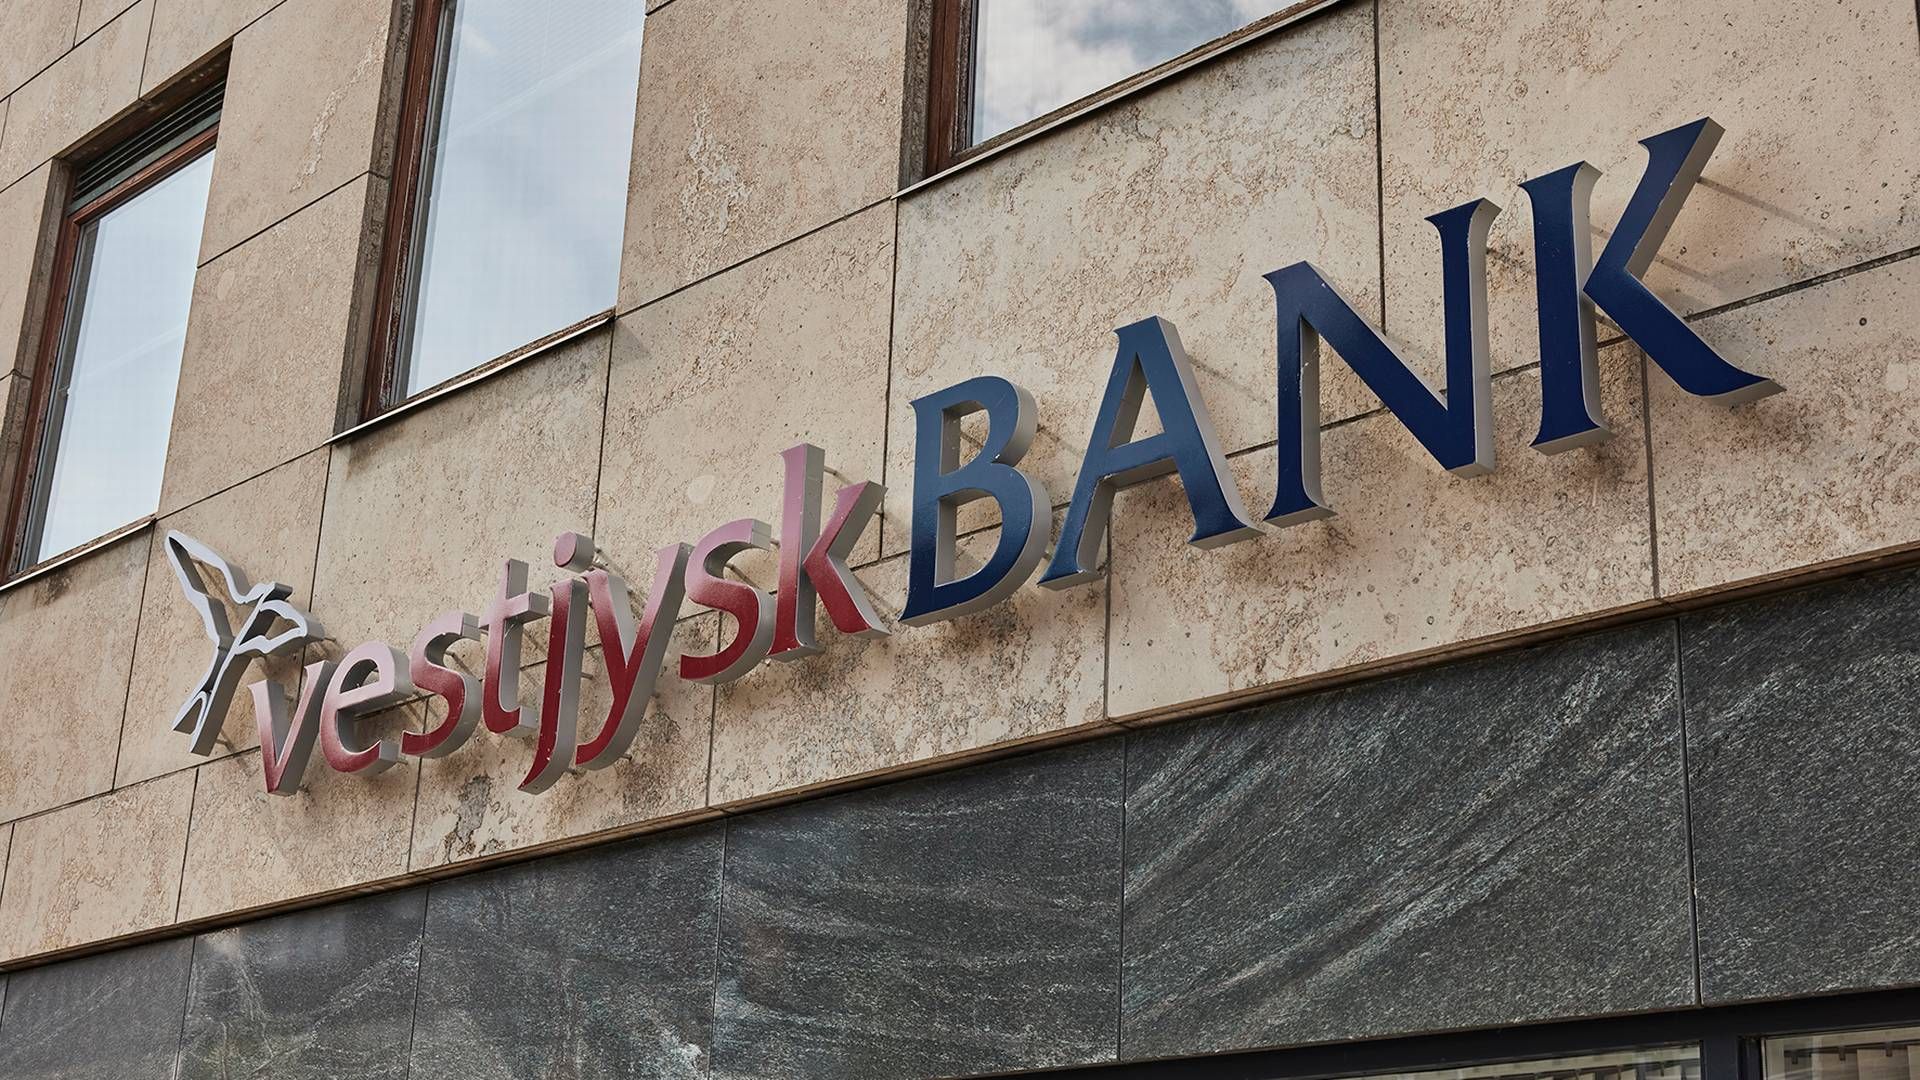 Vestjysk Bank forventer nu et resultat før skat for 2022 på omkring 600 mio. kr. | Foto: Vestjysk Bank/pr